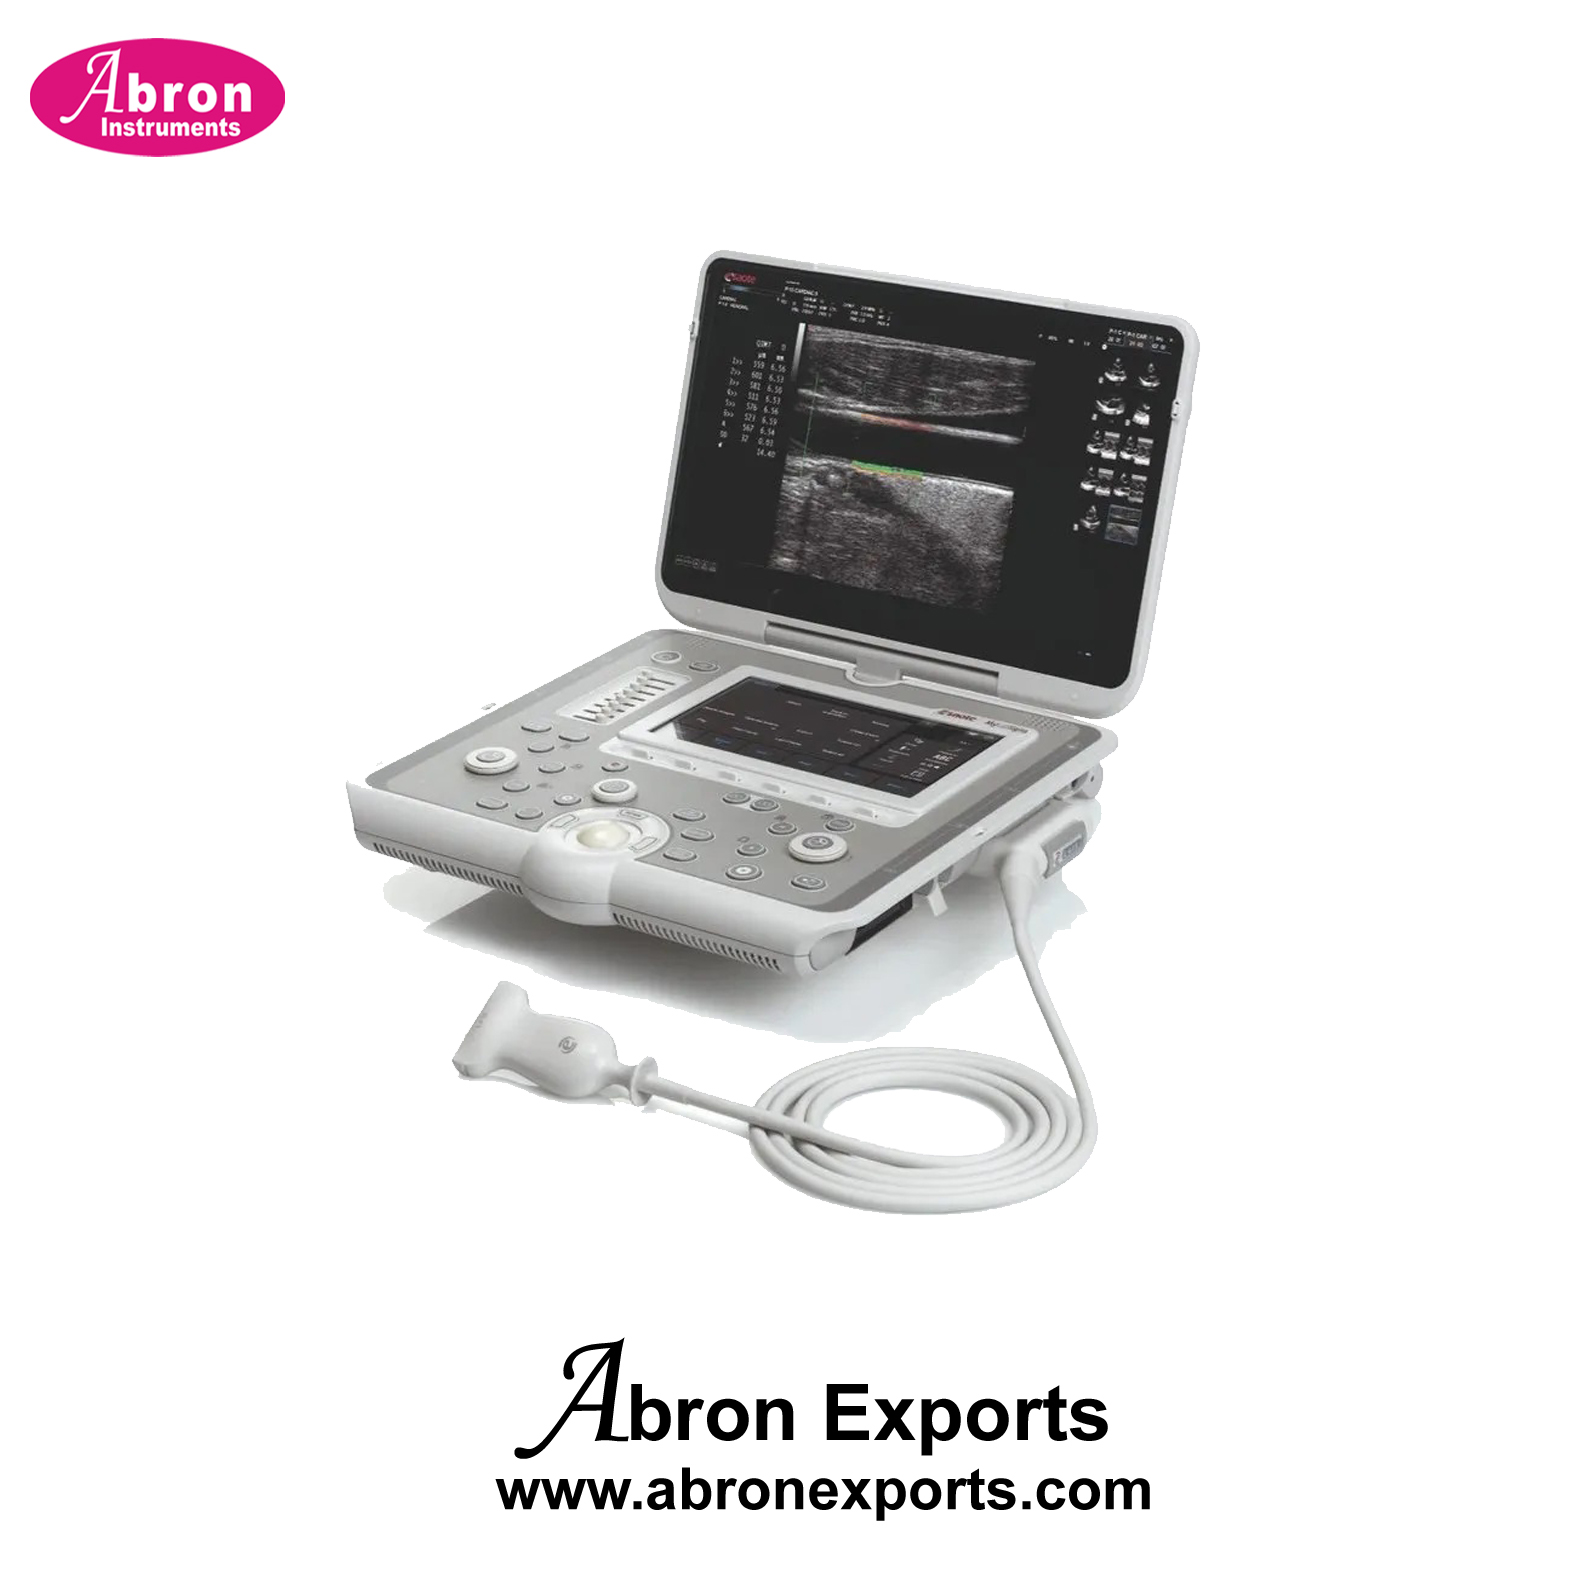 Echocardiography Scanner 3D4D premium end color doppler ultrasound scanner Hospital AbronABM-2505P3D4 